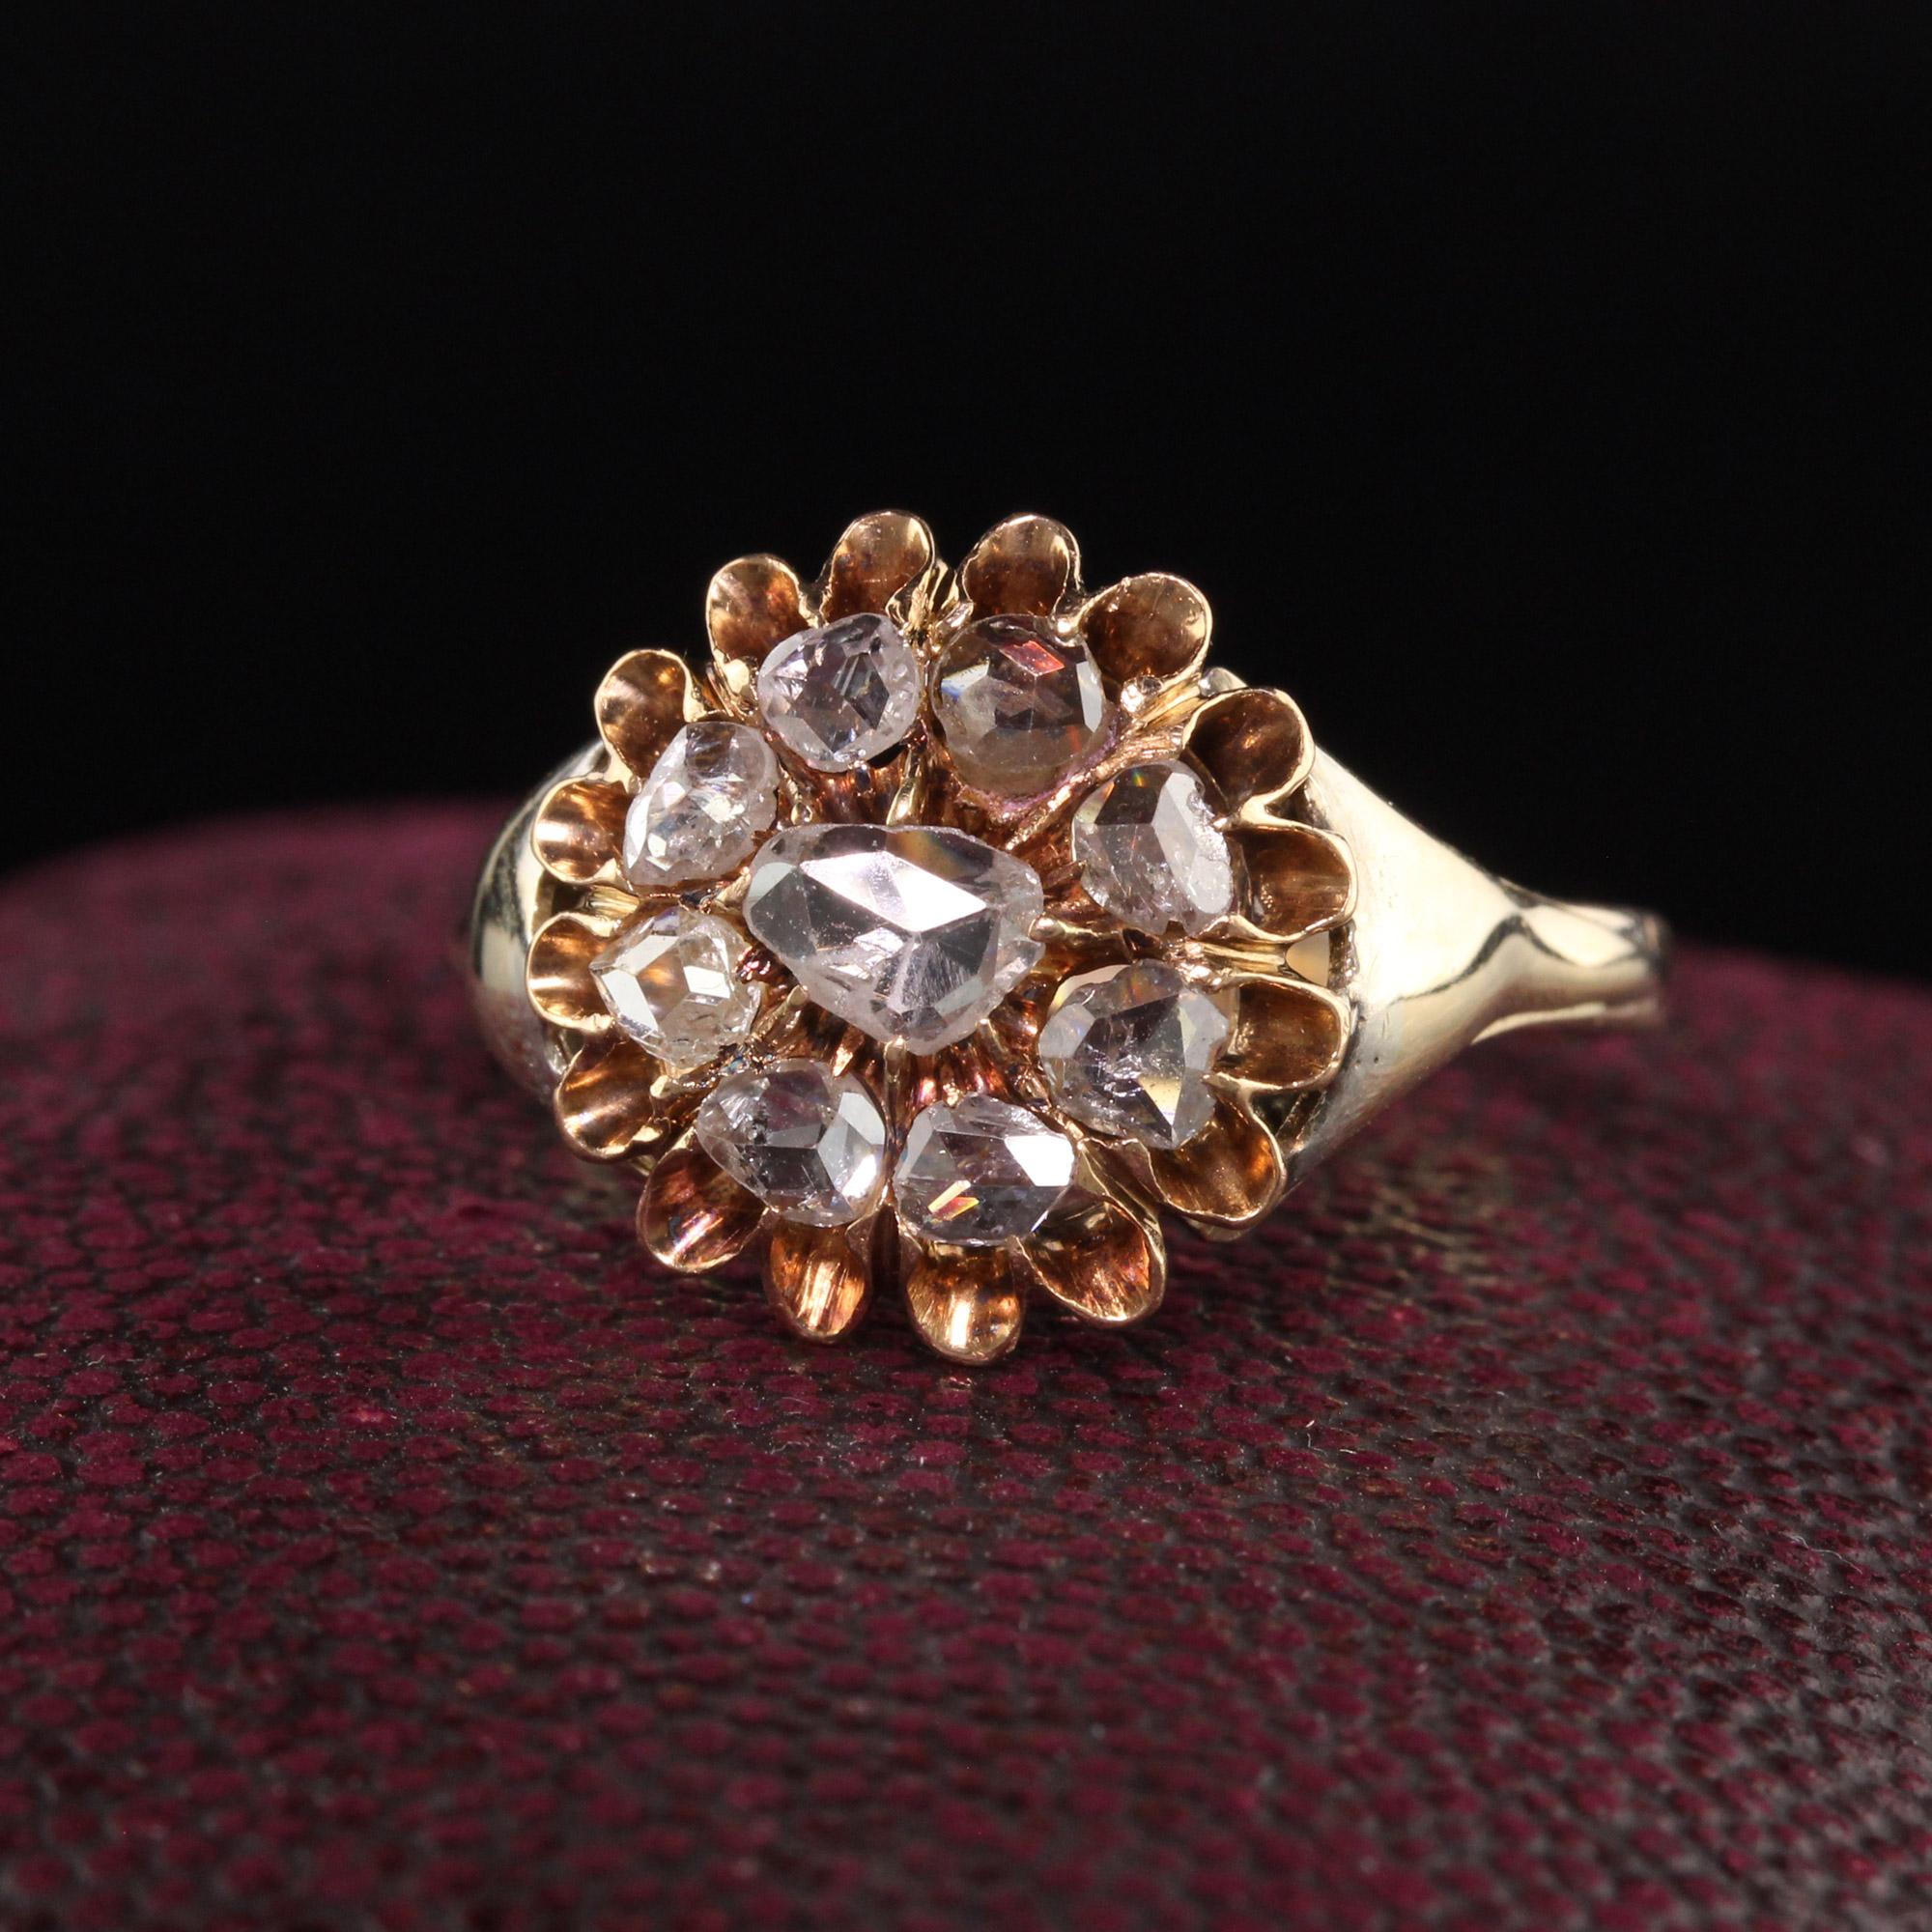 Magnifique bague victorienne ancienne en or jaune 14K à diamants taillés en rose. Cette magnifique bague est ornée de diamants roses magnifiquement taillés en forme de grappe et se porte très bas sur le doigt.

Article #R1063

Métal : Or jaune